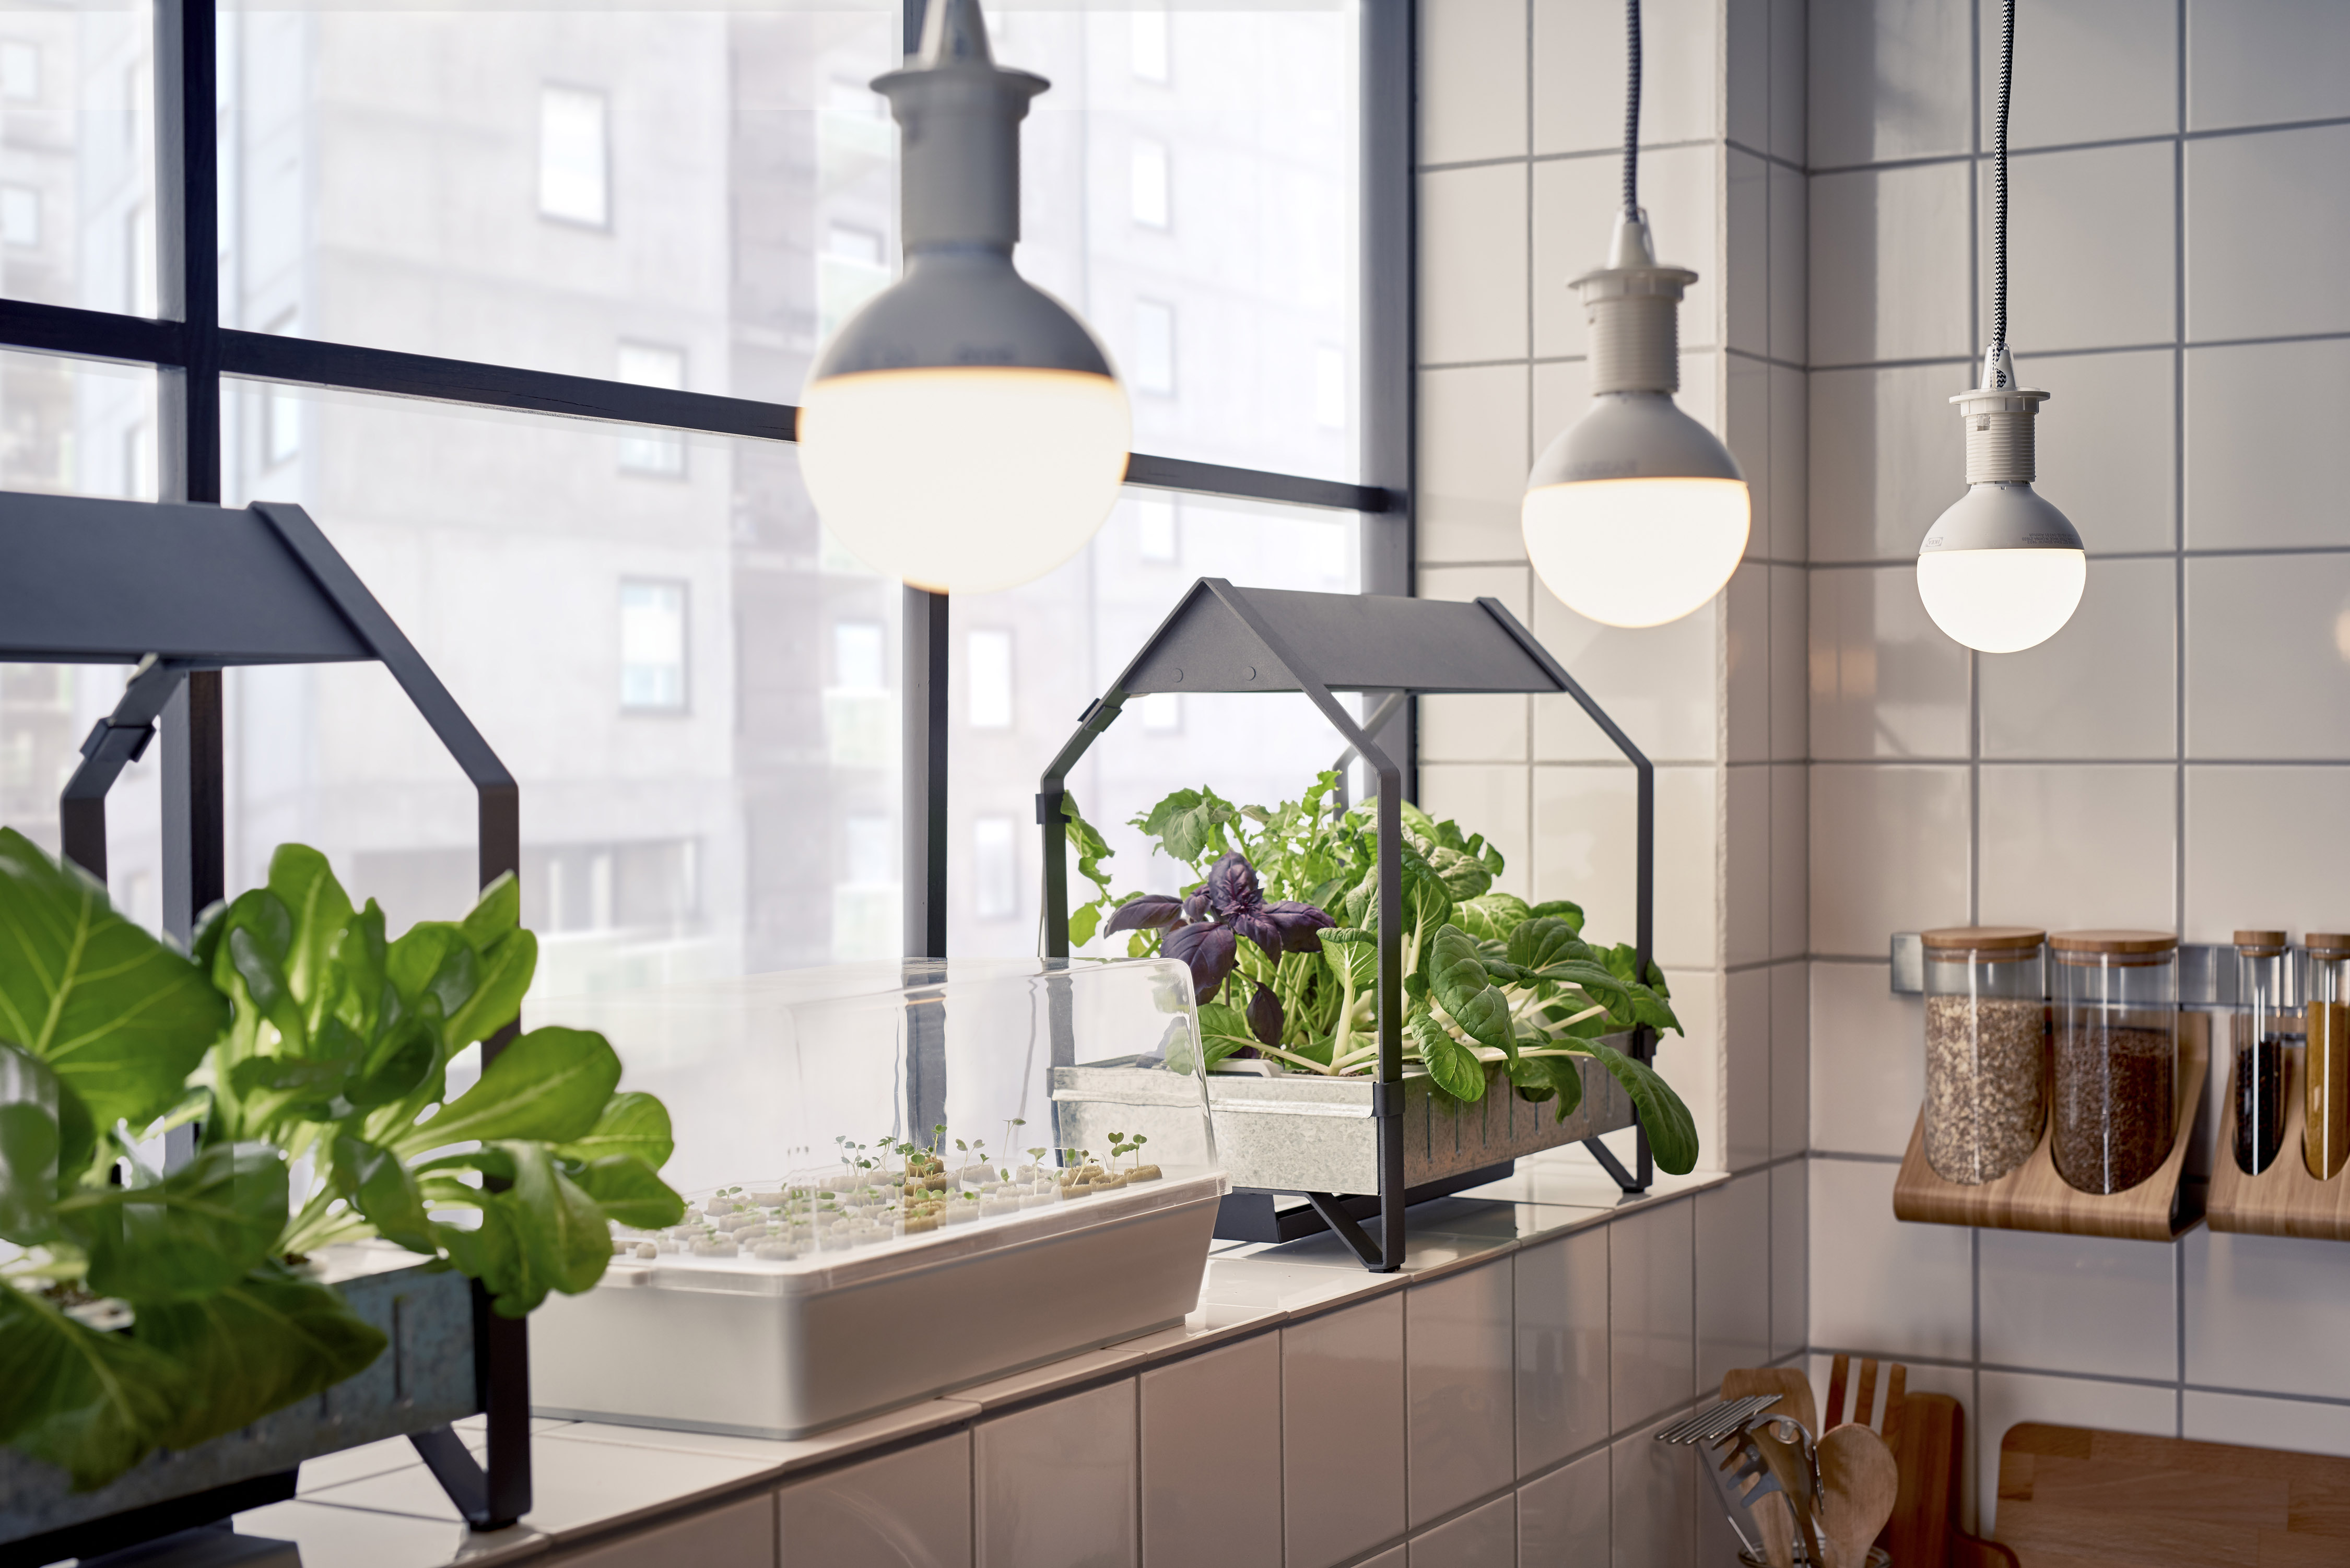 Uitsluiting vroegrijp pianist IKEA laat consument zelf thuis verse groenten en kruiden kweken